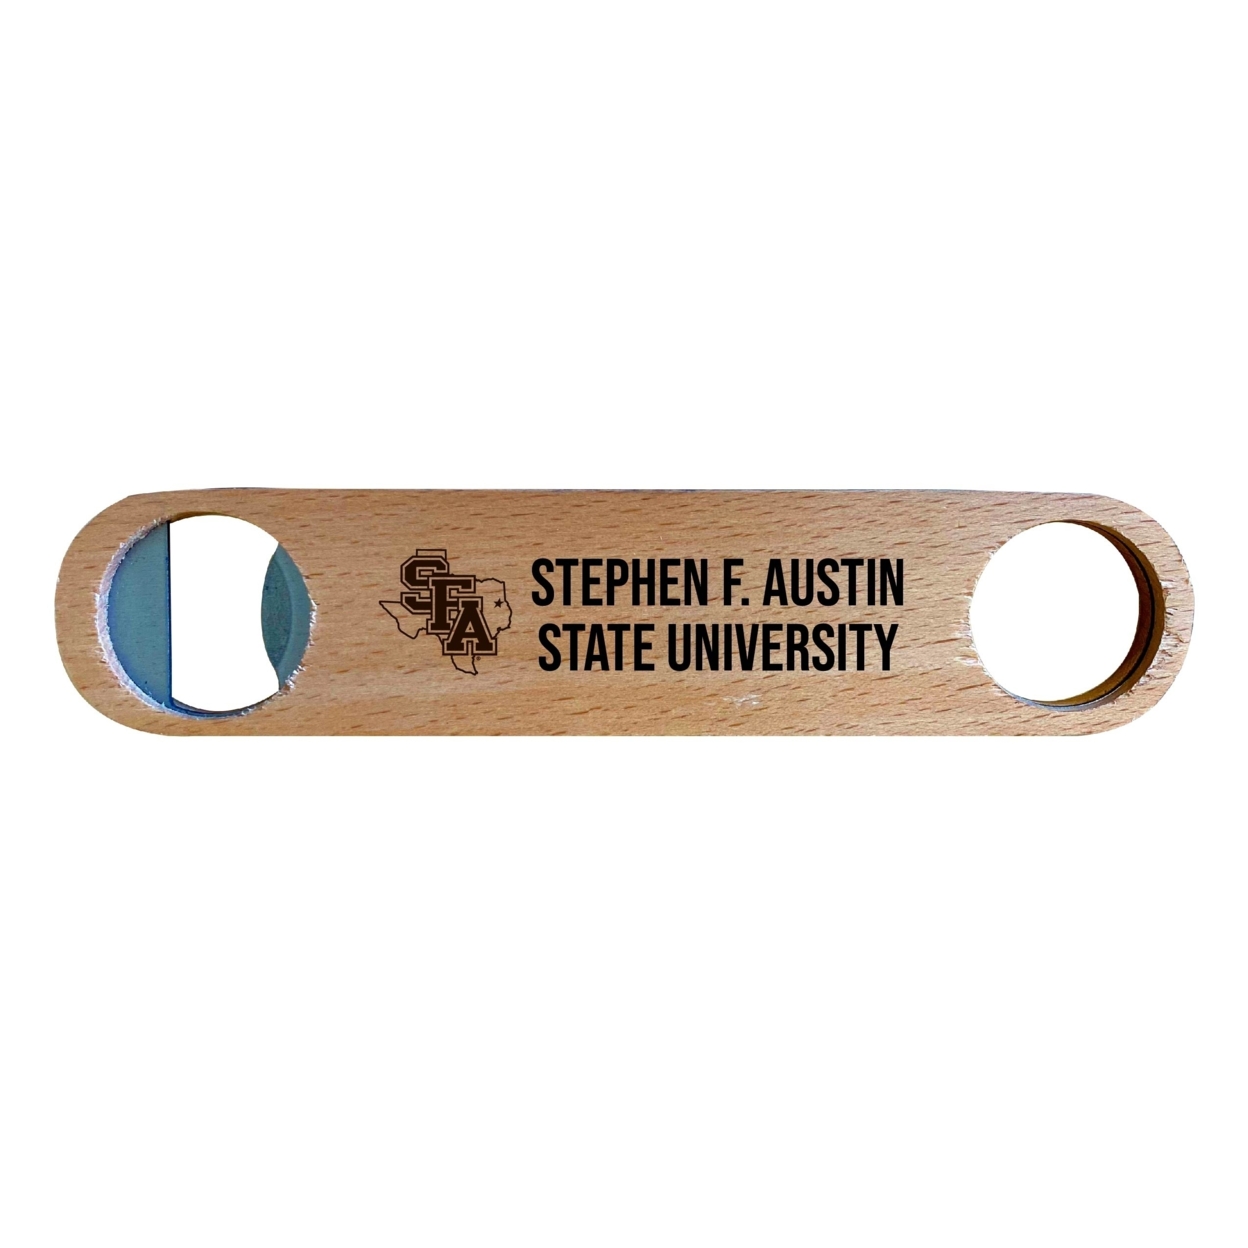 Stephen F. Austin State University Laser Etched Wooden Bottle Opener College Logo Design